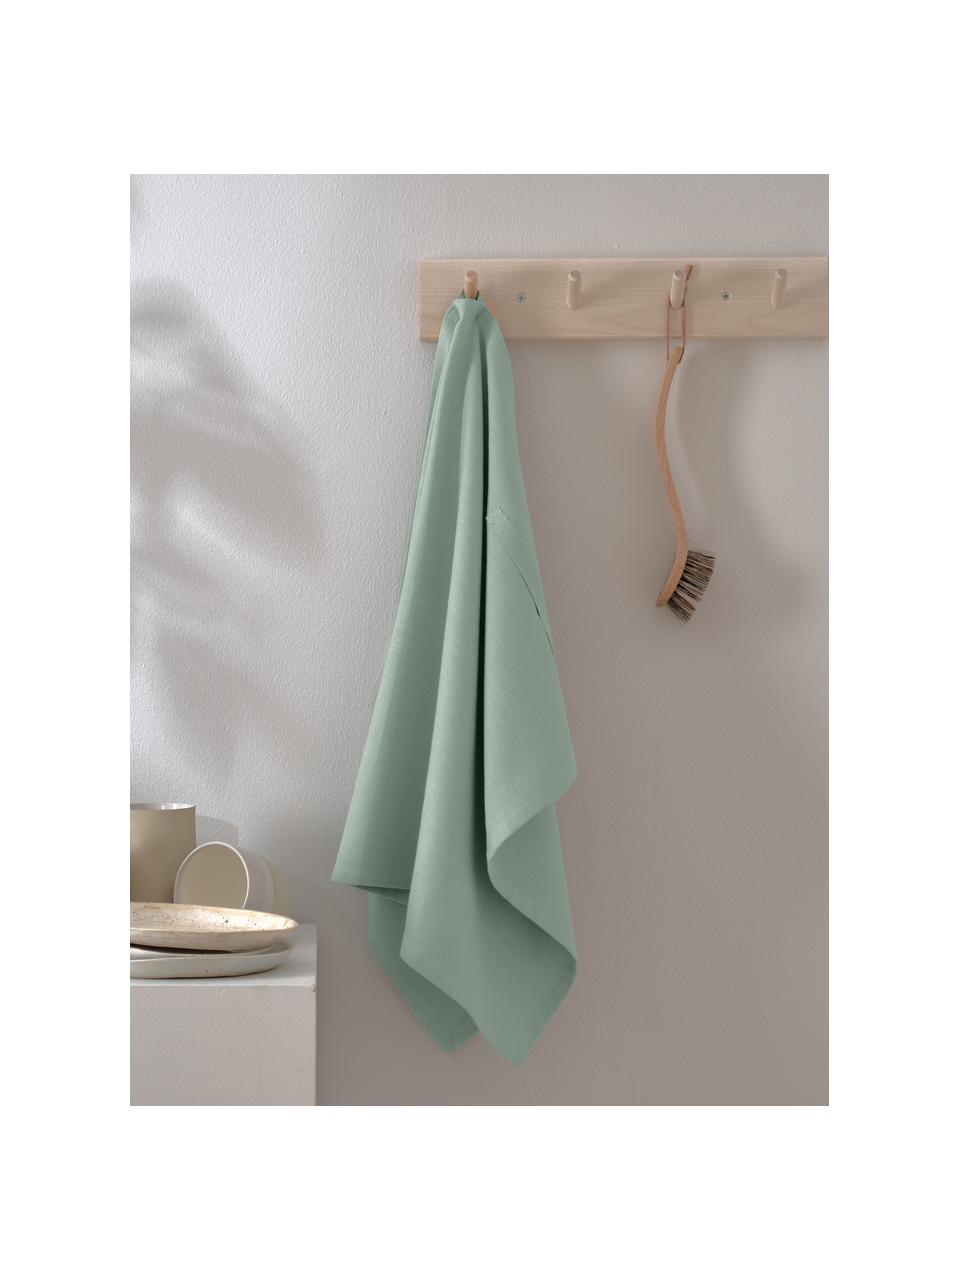 Ręcznik kuchenny z bawełny organicznej Tangled, 100% bawełna organiczna z certyfikatem GOTS, Szałwiowy zielony, S 53 x D 86 cm